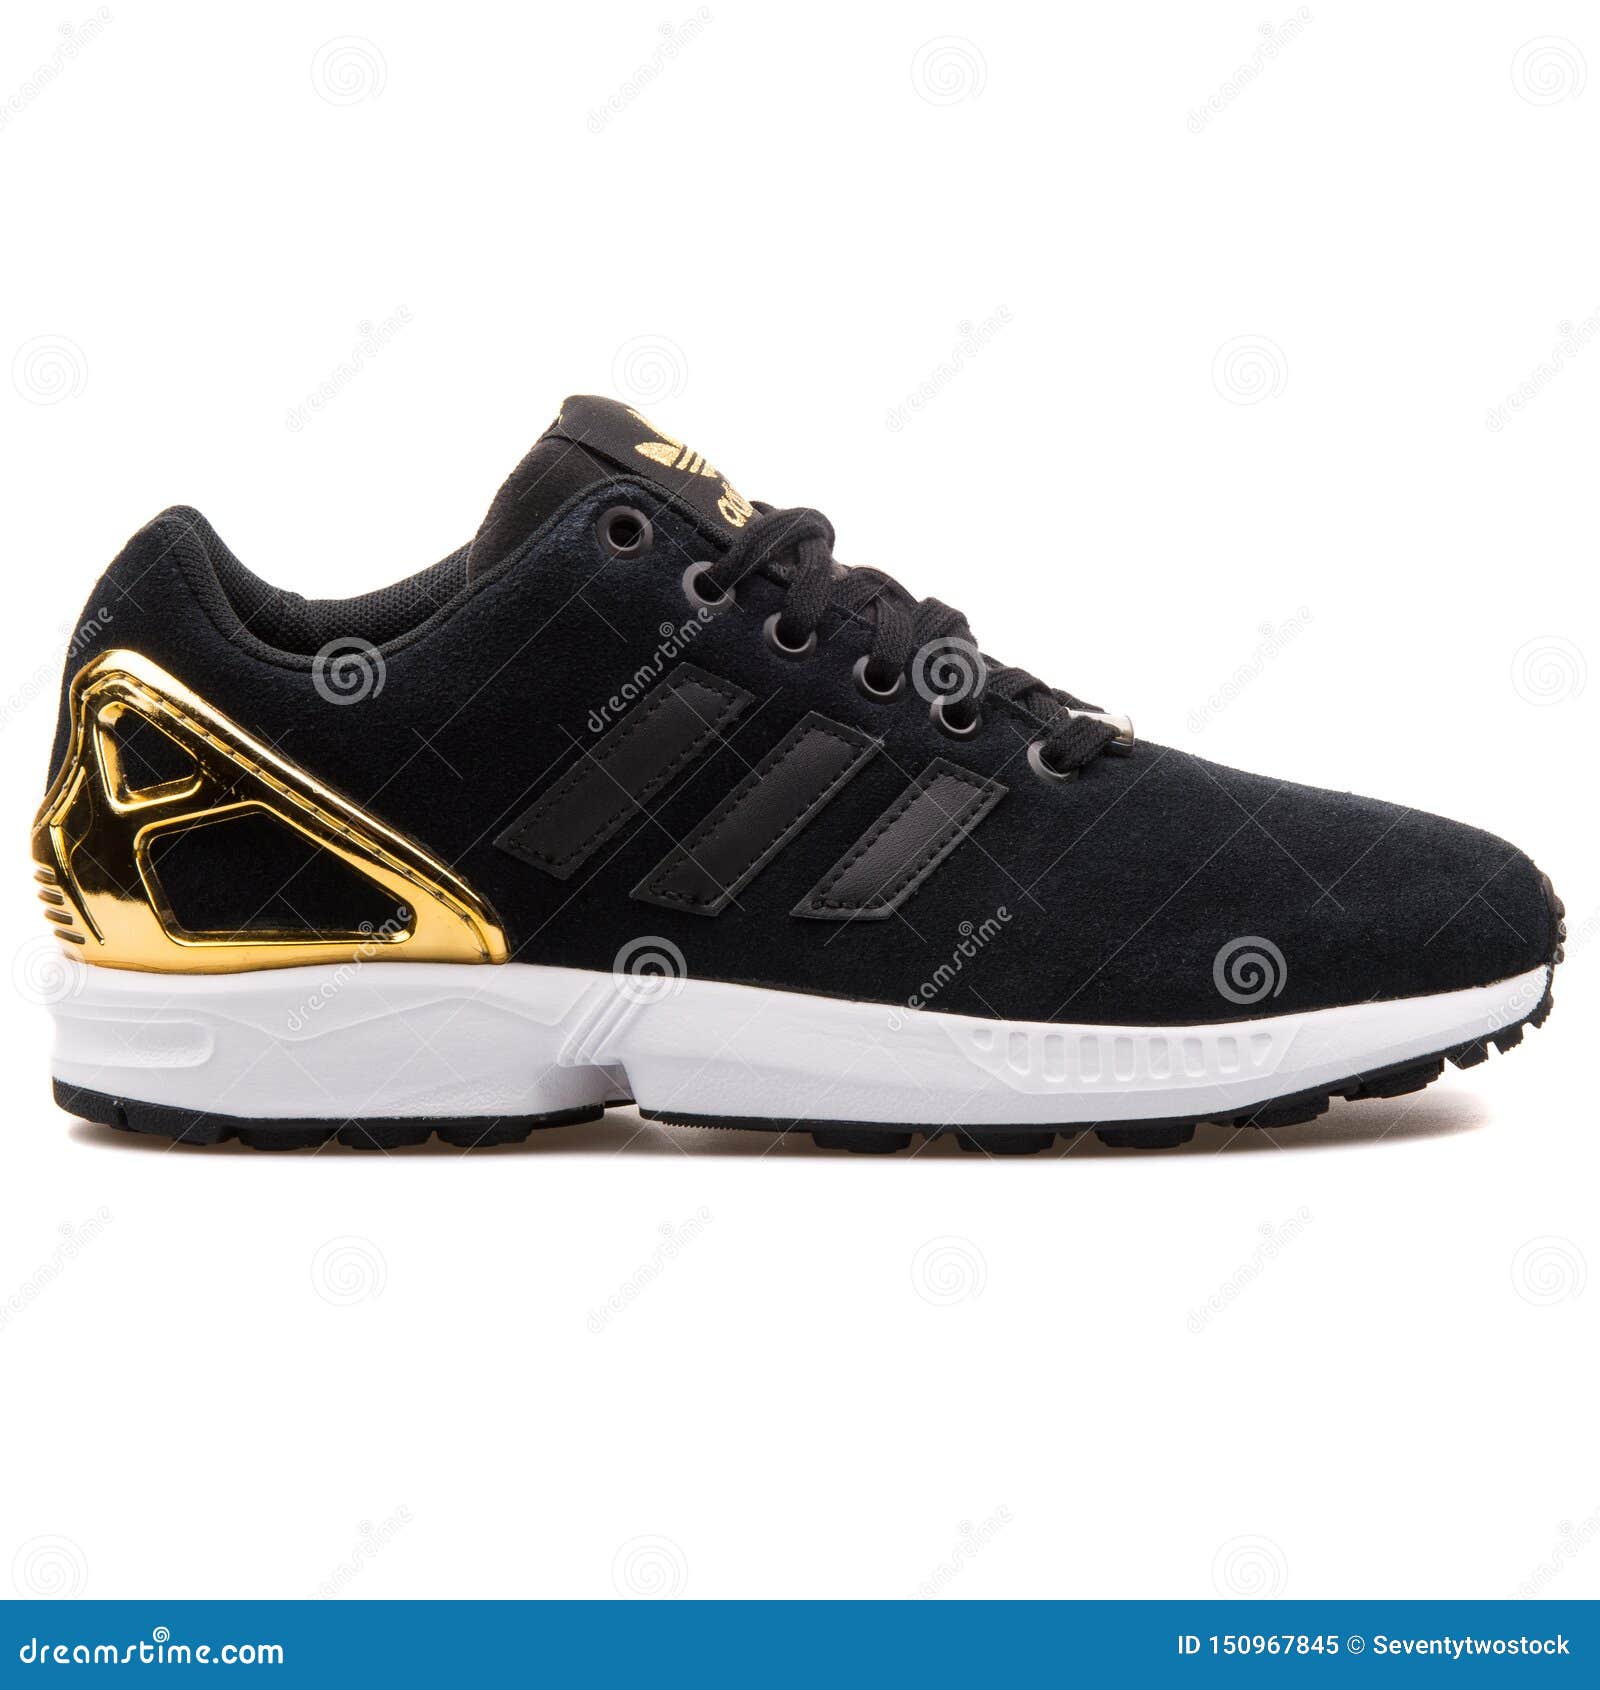 Μαύρο και χρυσό πάνινο παπούτσι ροής της Adidas ZX Εκδοτική εικόνα - εικόνα  από lifestyle: 150967845